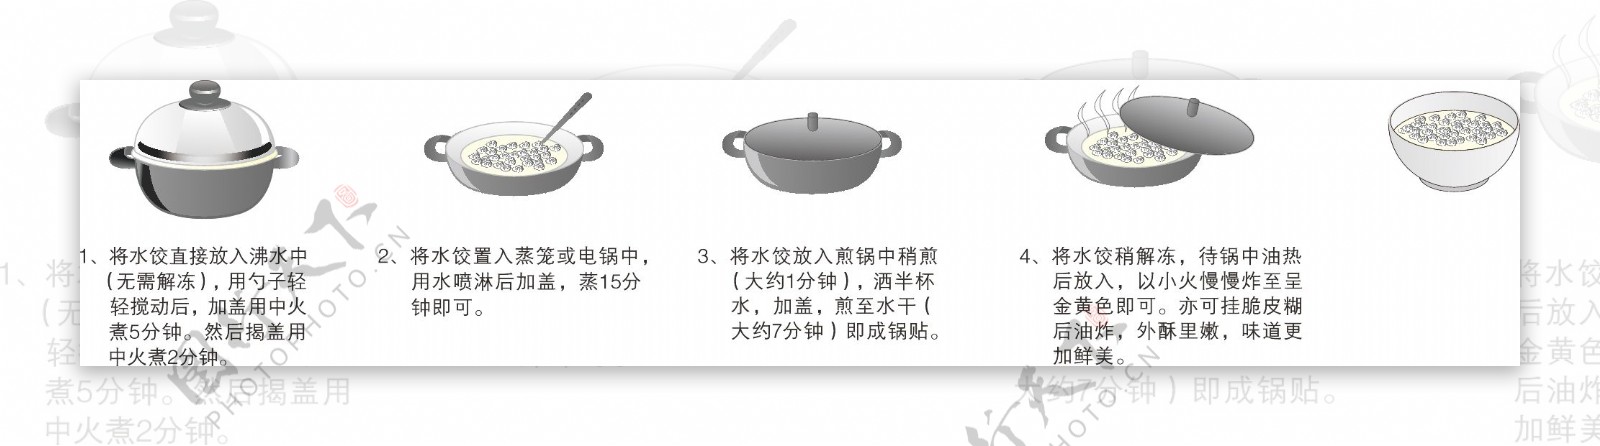 水饺食用方法馄饨食用方法图片